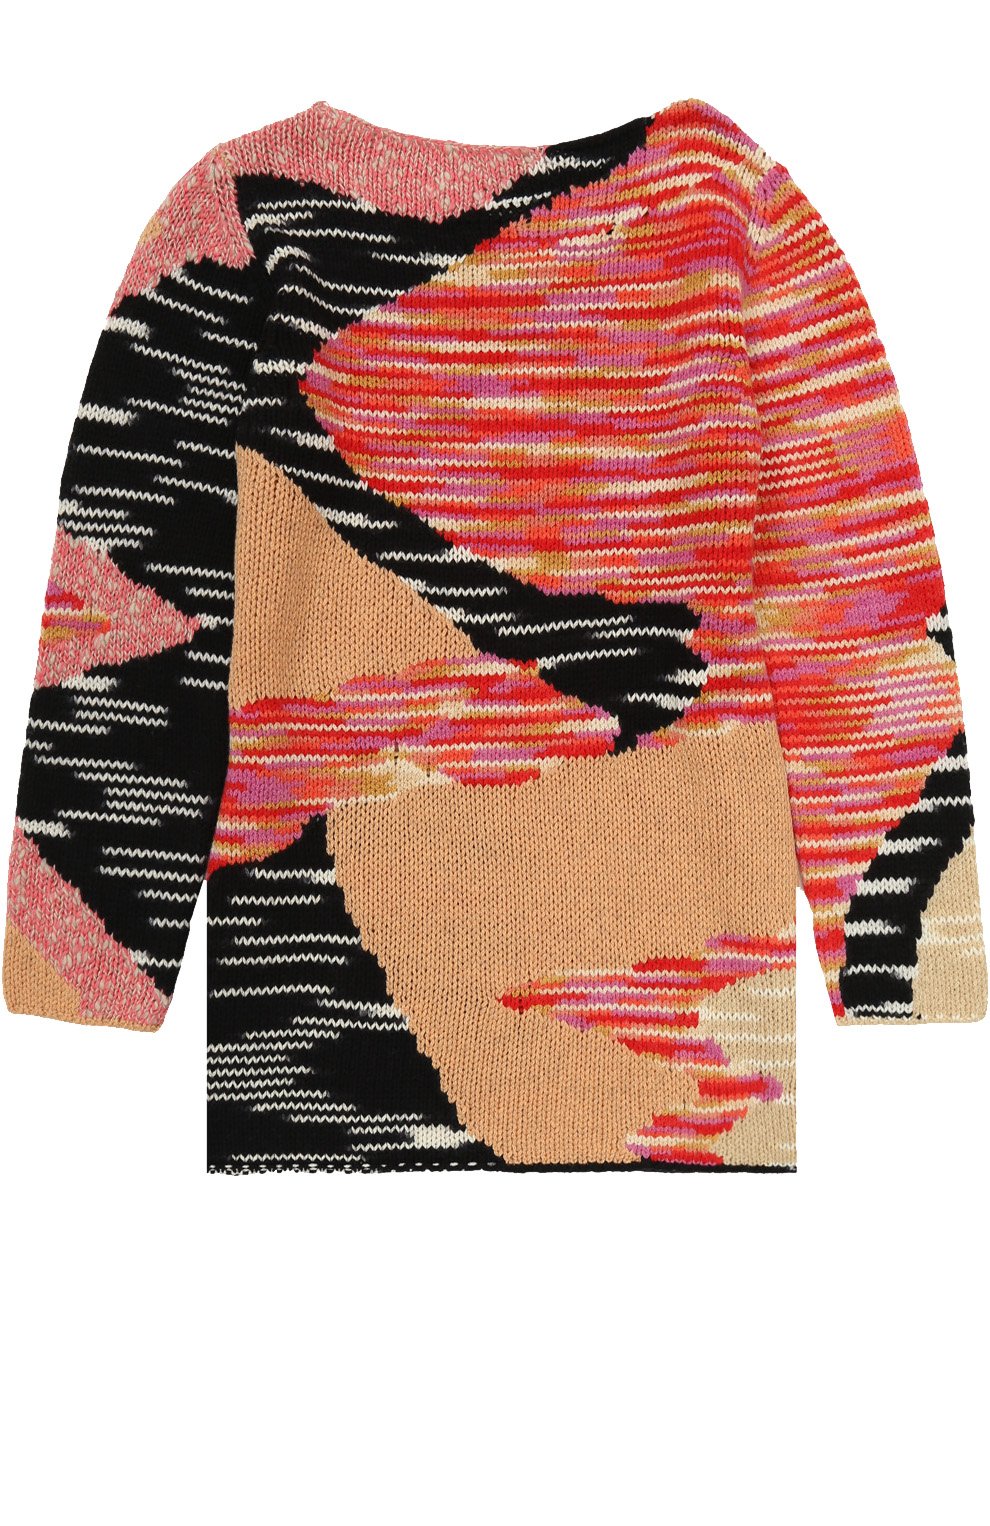 Платья Missoni, Вязаное мини-платье прямого кроя с принтом Missoni, Италия, Розовый, Шерсть: 77%; Кашемир: 5%; Полиамид: 18%;, 2405556  - купить